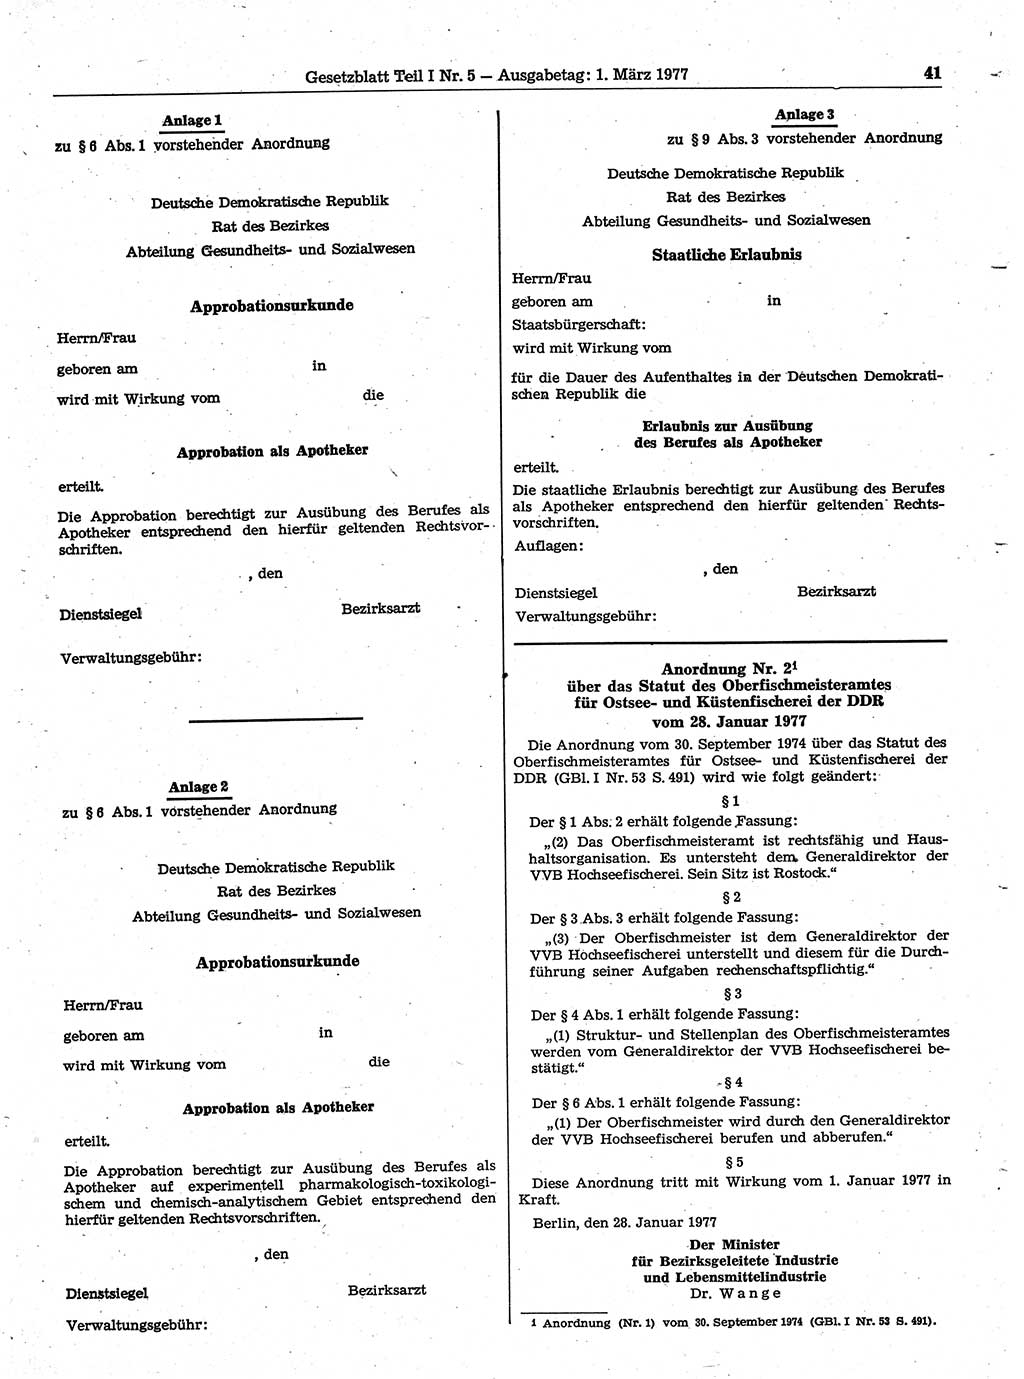 Gesetzblatt (GBl.) der Deutschen Demokratischen Republik (DDR) Teil Ⅰ 1977, Seite 41 (GBl. DDR Ⅰ 1977, S. 41)